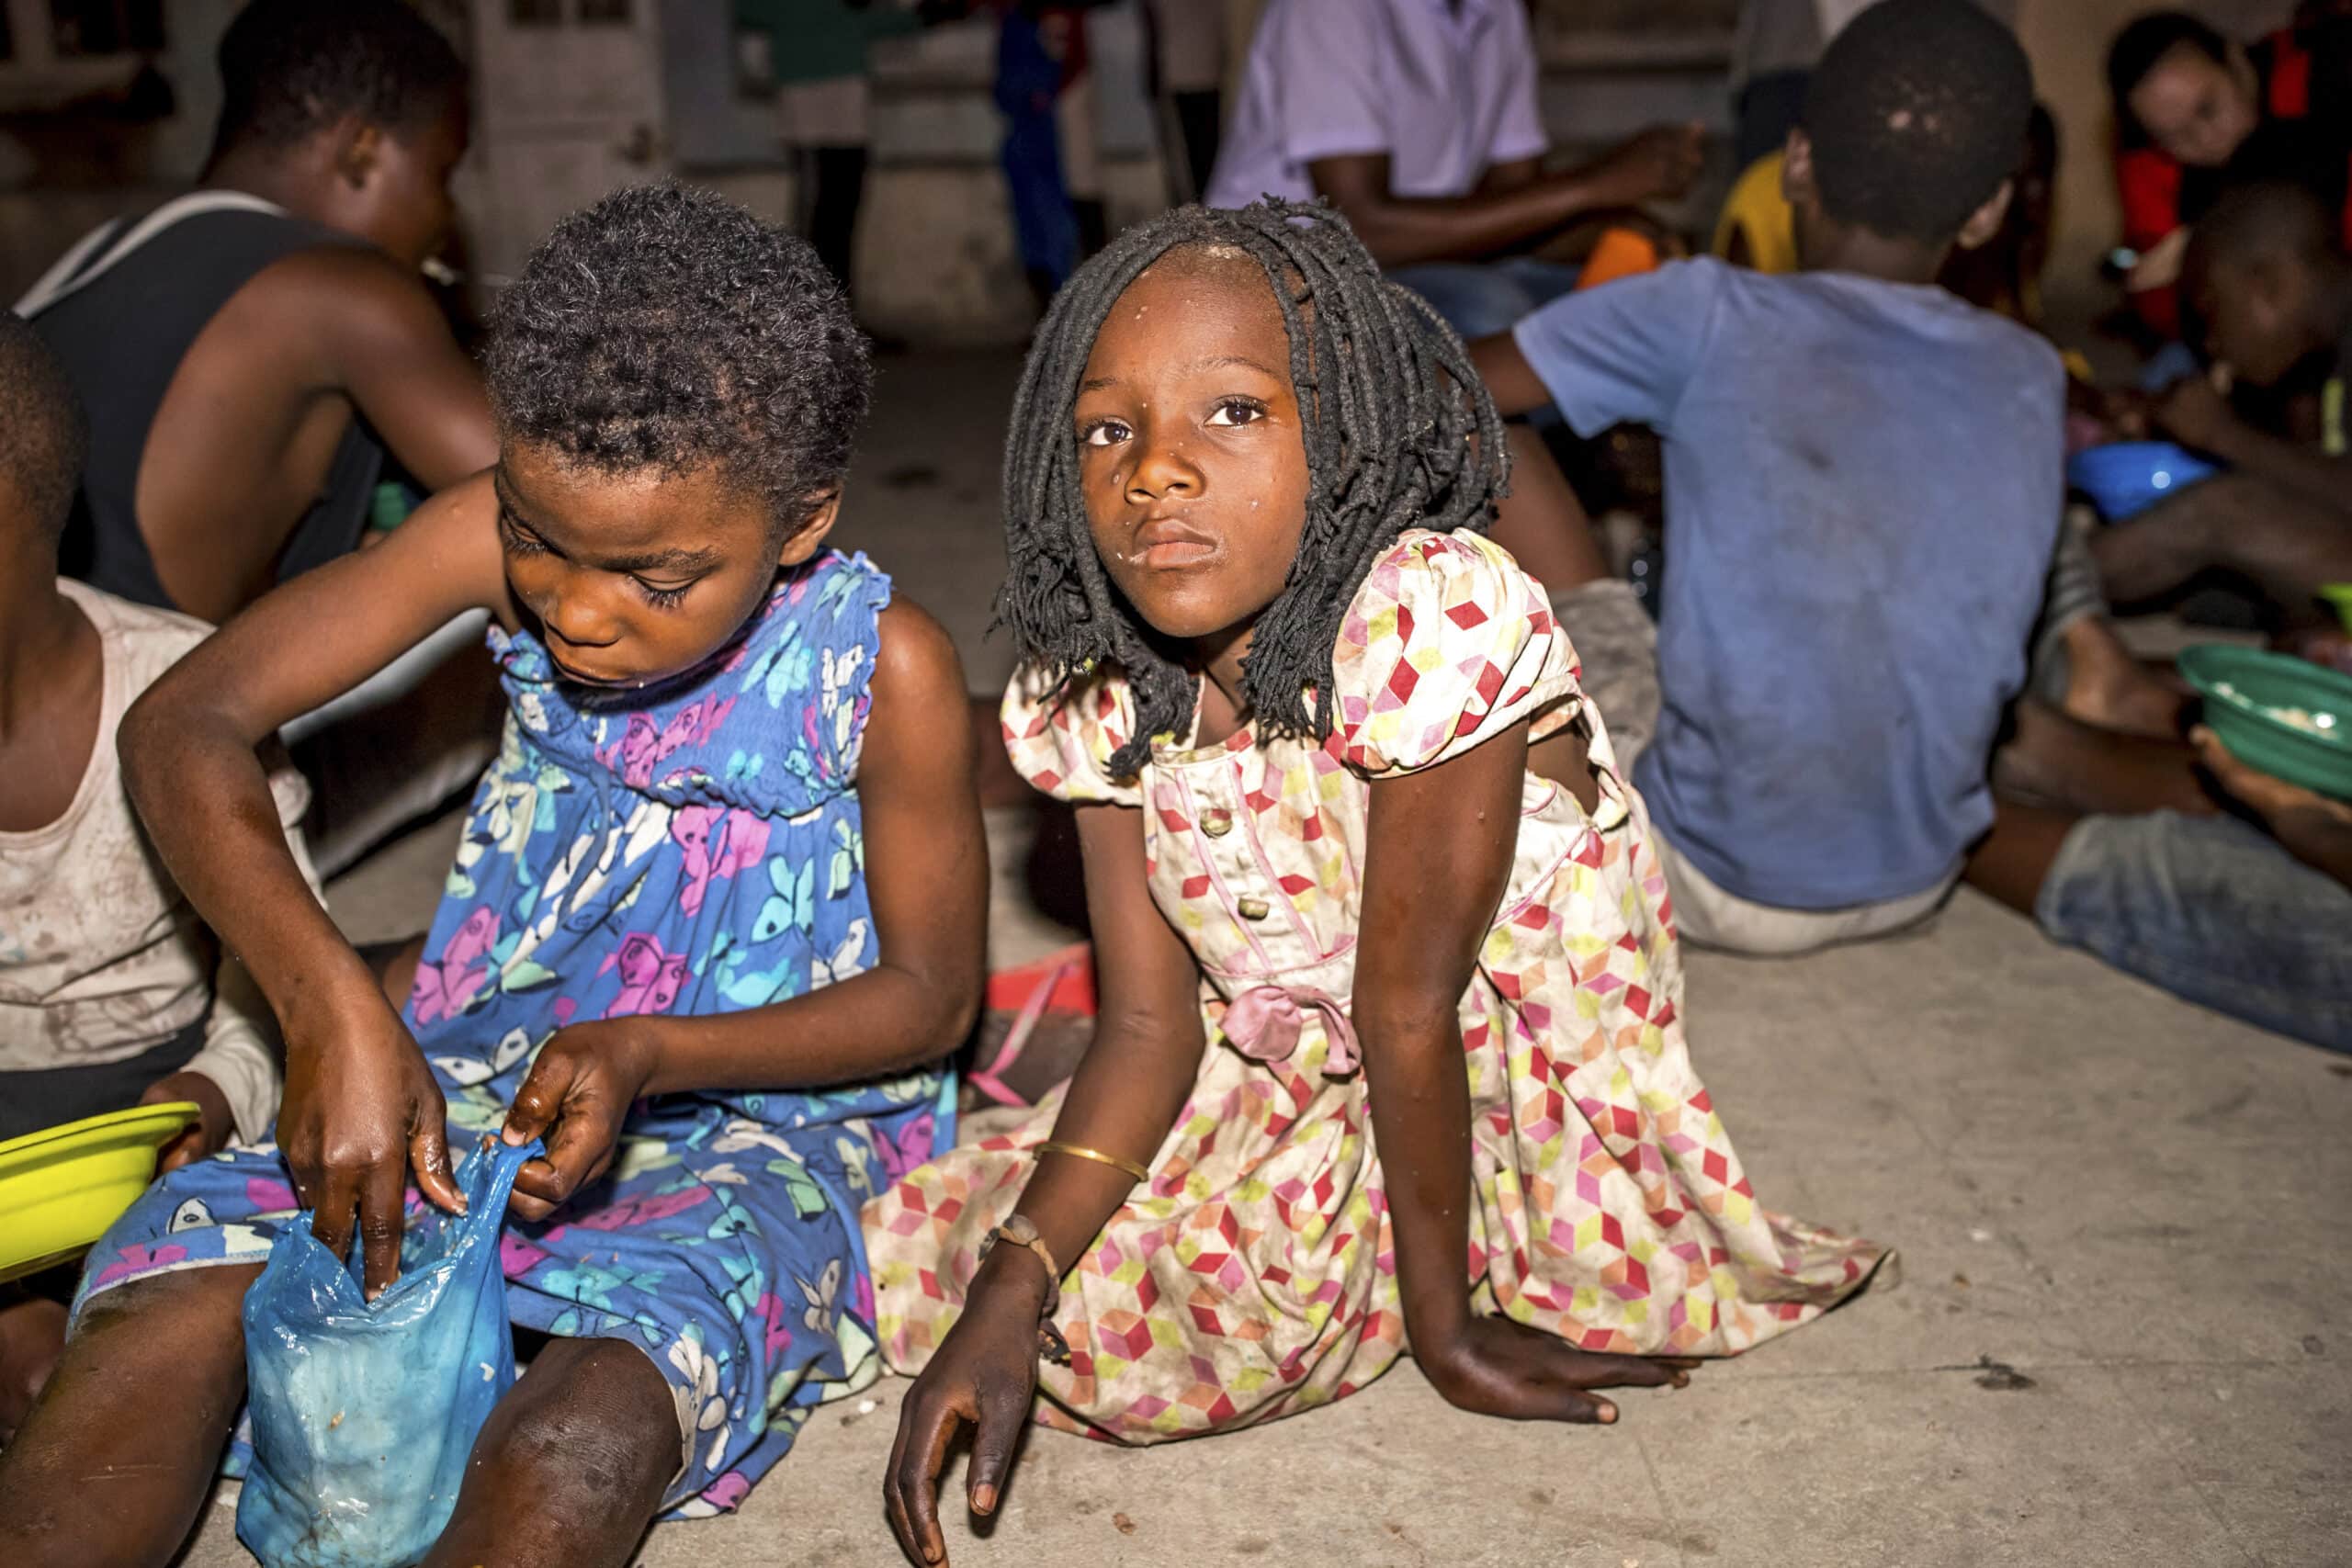 Zwei junge Mädchen sitzen nachts auf dem Boden; eines ist darauf konzentriert, ein blaues Stück Stoff zu bemalen, während das andere direkt in die Kamera blickt. Im Hintergrund sind weitere Kinder zu sehen. © Fotografie Tomas Rodriguez